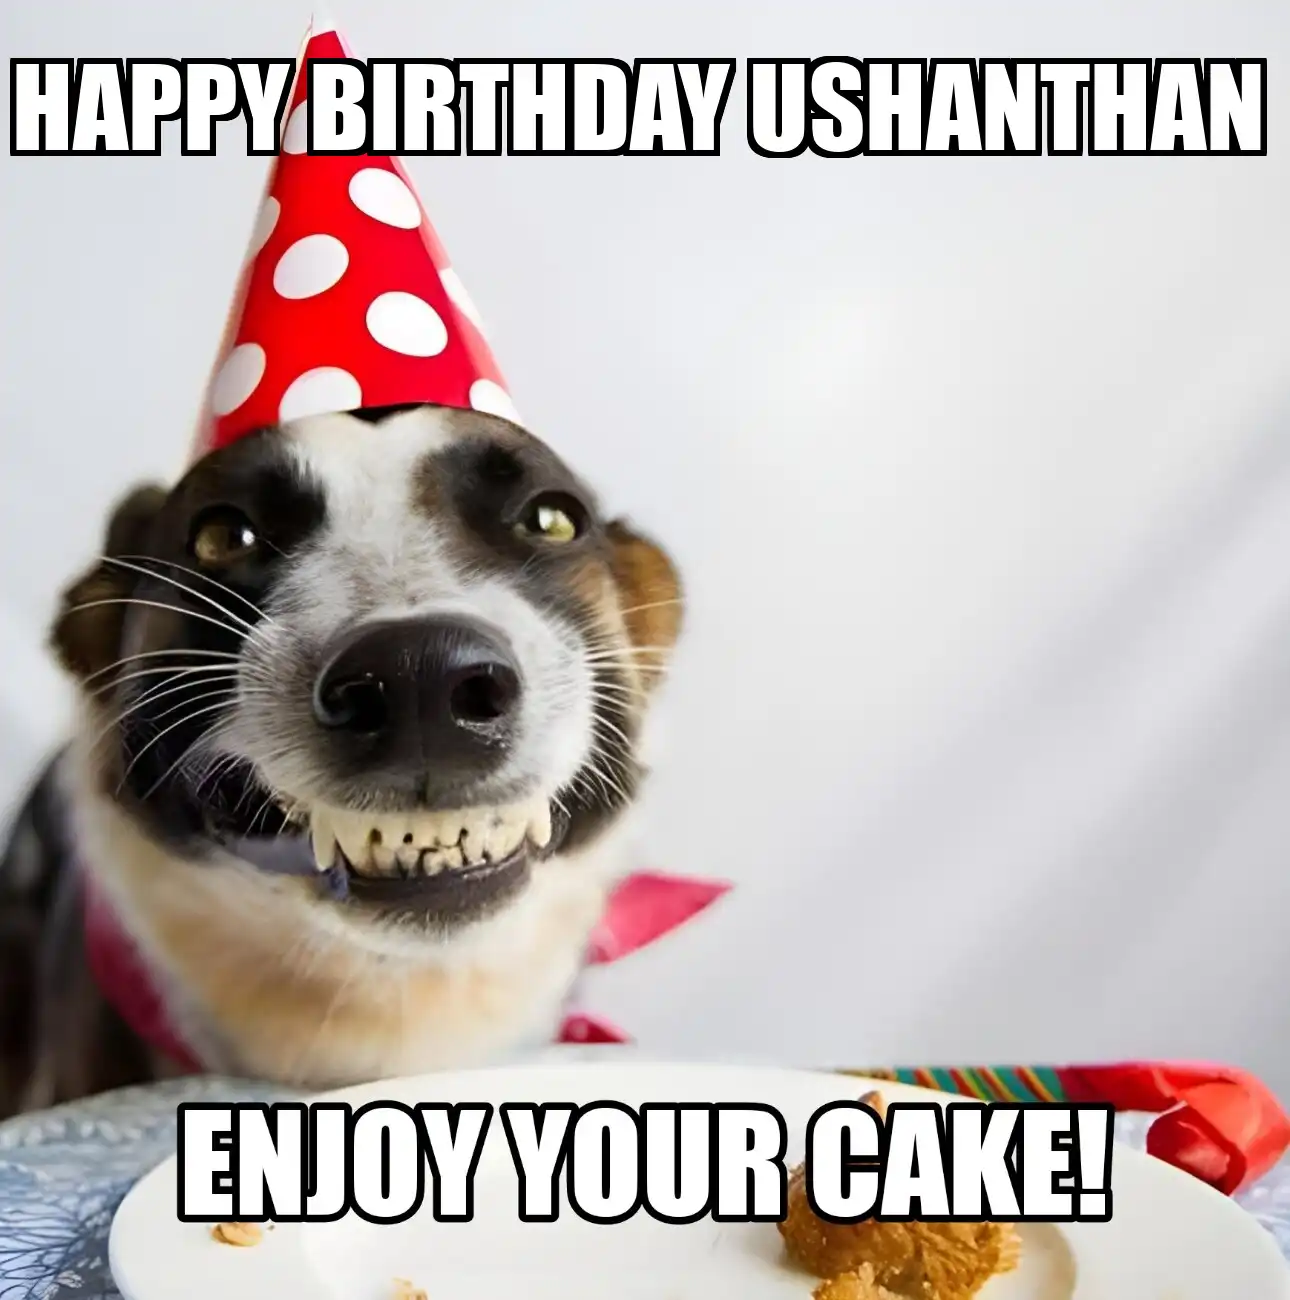 Happy Birthday Ushanthan Enjoy Your Cake Dog Meme